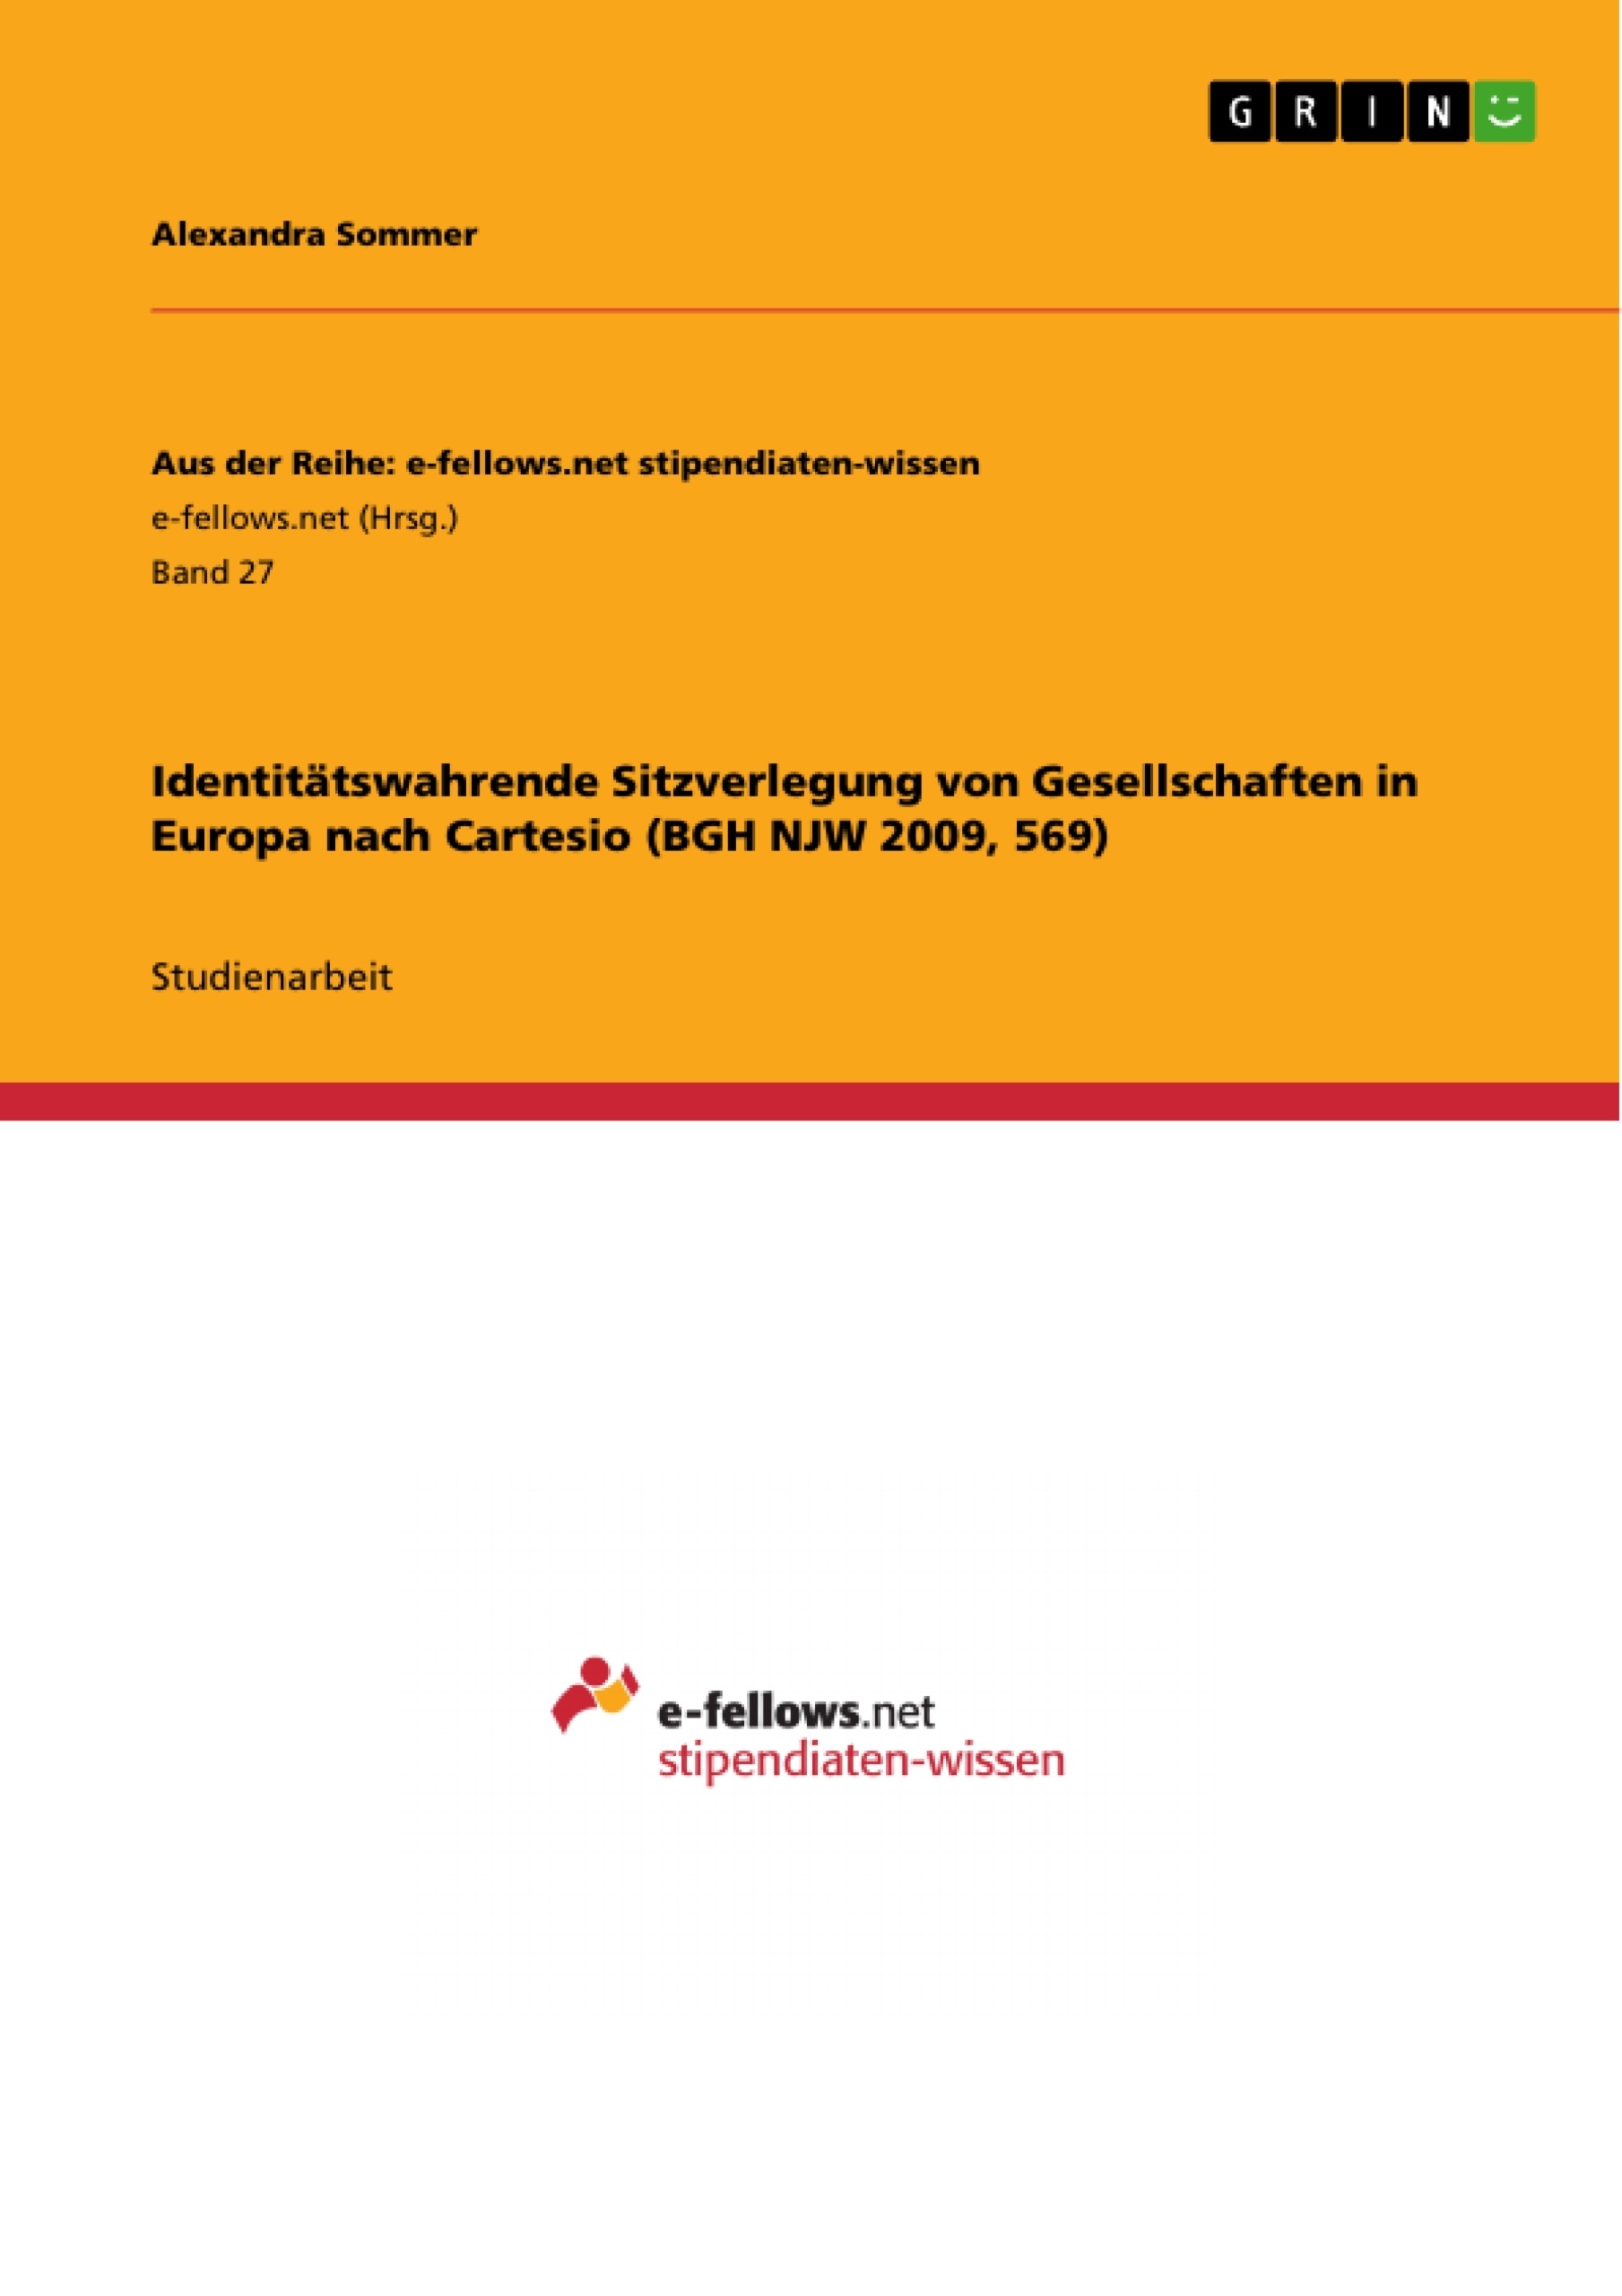 Titre: Identitätswahrende Sitzverlegung von Gesellschaften in Europa nach Cartesio (BGH NJW 2009, 569)